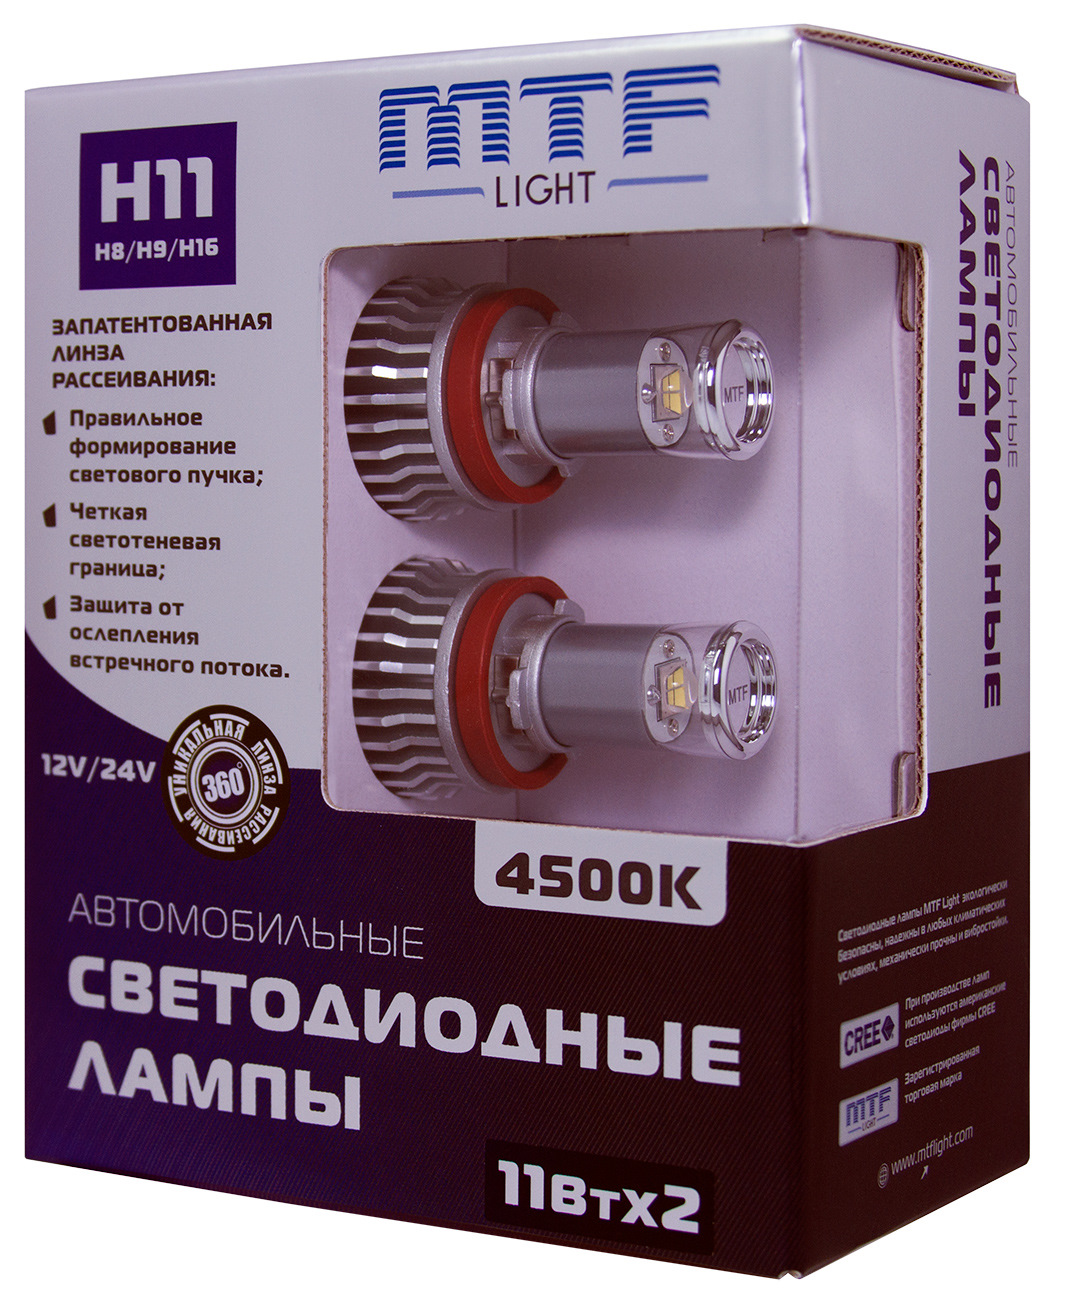 Светодиодные лампы mtf h11. Лампа светодиодная psx24w MTF. Лампы psx24w диодные Шевроле Каптива. MTF Light 12/24v h11 4500k 11wx2. Светодиодные лампы MTF h8/9/11/16.